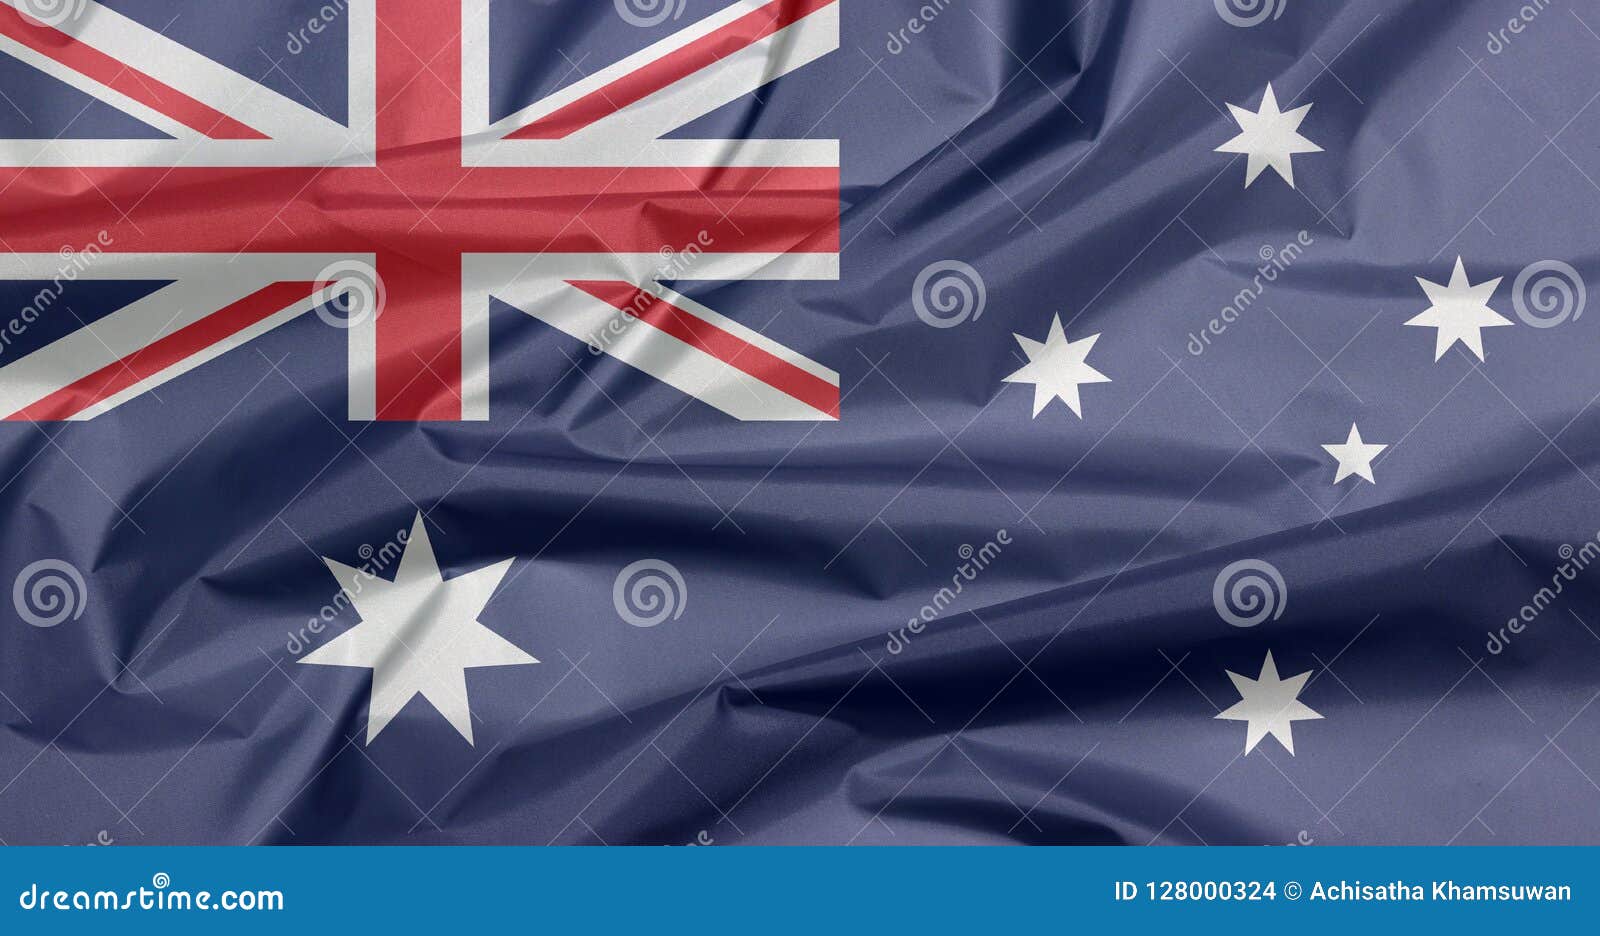 Cờ Úc được thiết kế rất độc đáo với một chùm ngôi sao nguyên thủy và vàng trên nền xanh đậm. Xem hình ảnh của lá cờ này và bạn sẽ cảm nhận được sự kiêu hãnh và tự hào của người Úc.